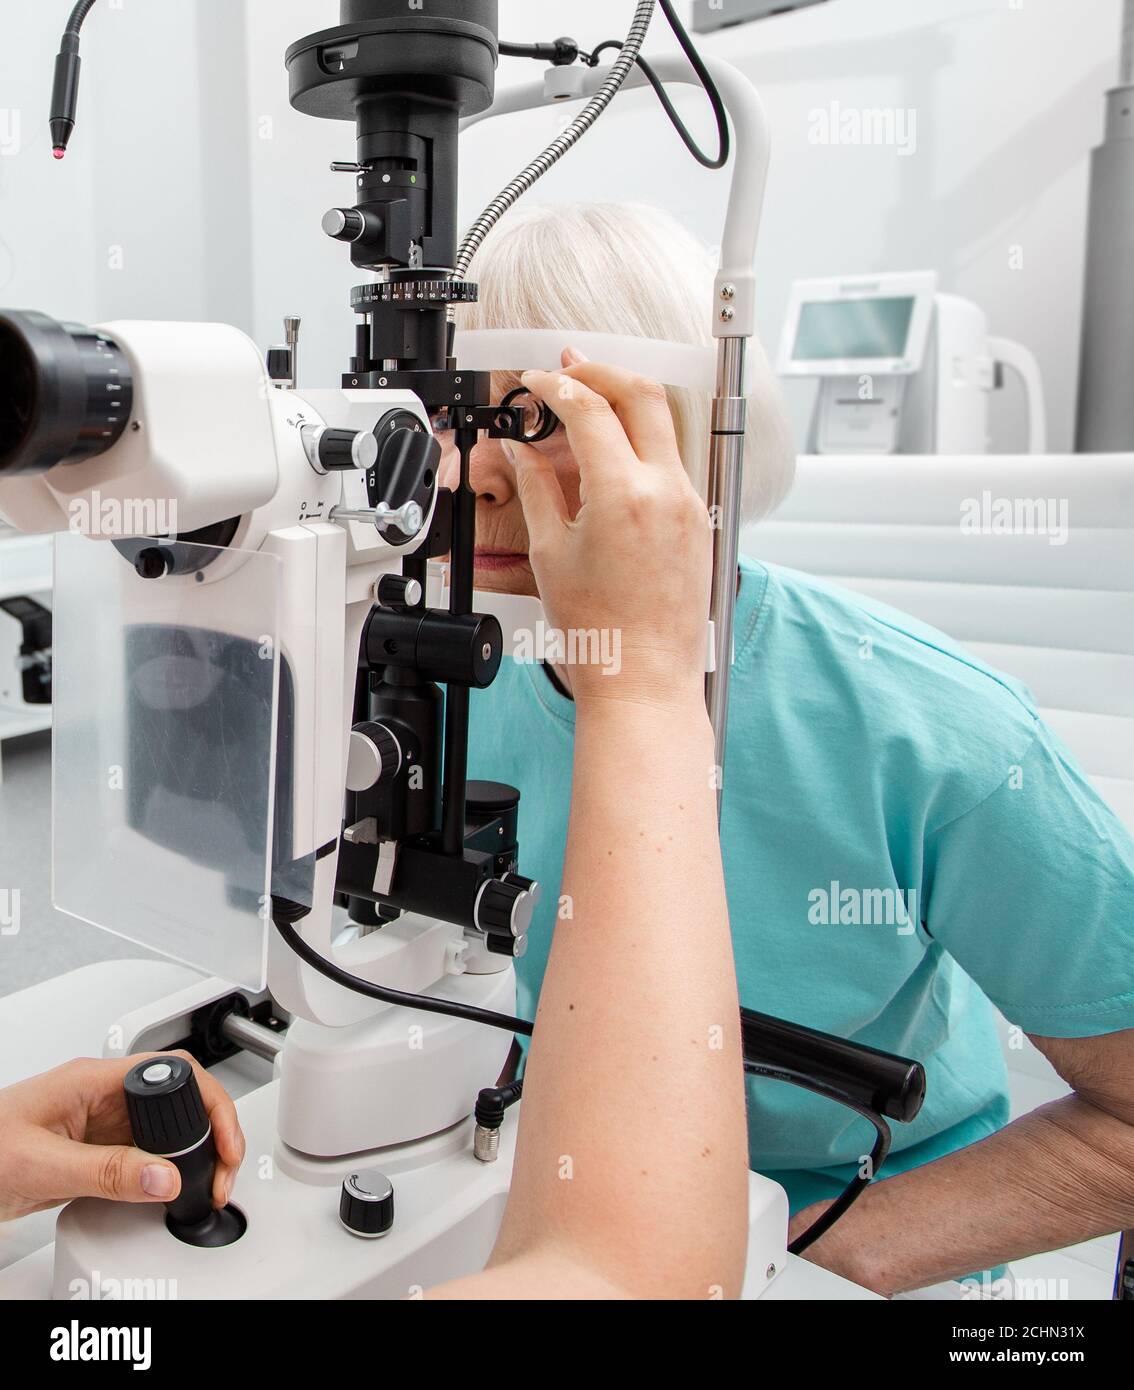 Femme âgée examinée par un ophtalmologiste sur un équipement ophtalmique, un examen oculaire, un examen oculaire Banque D'Images